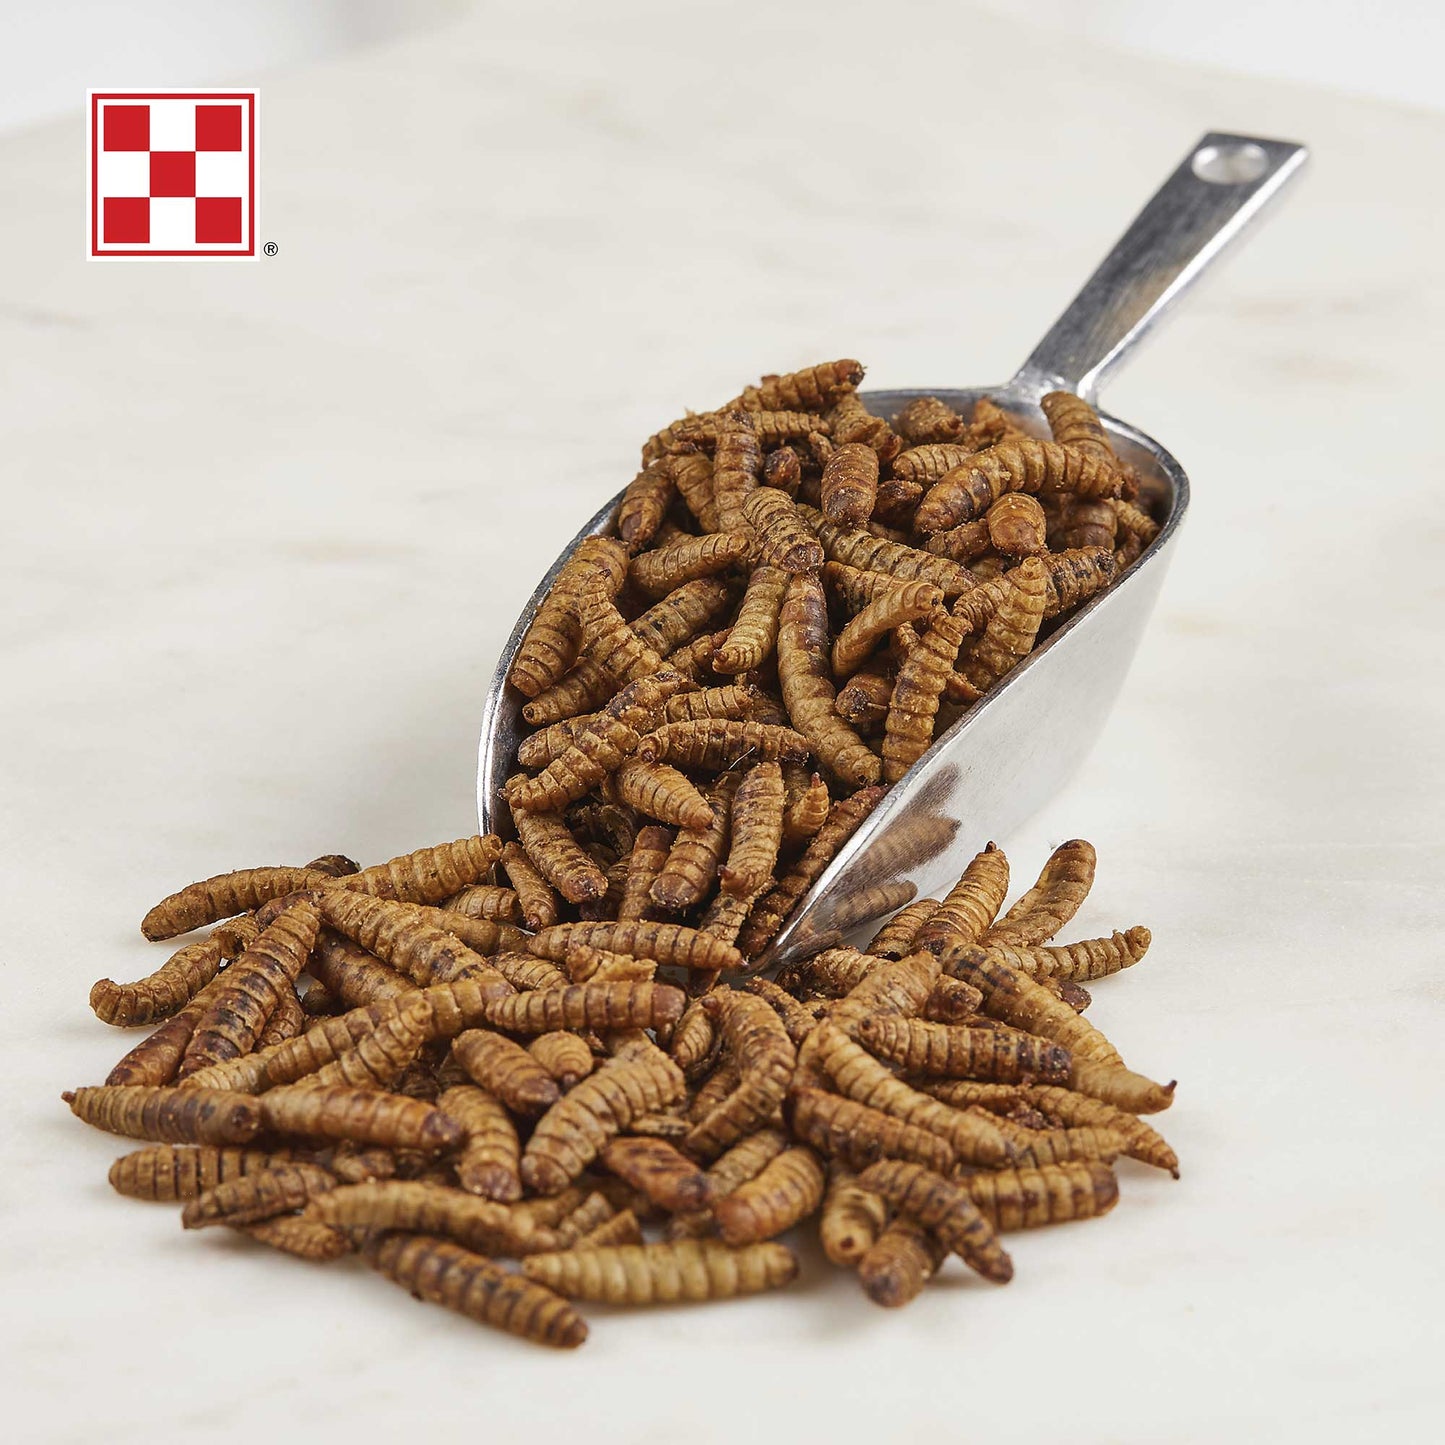 Dried Larvae in scoop